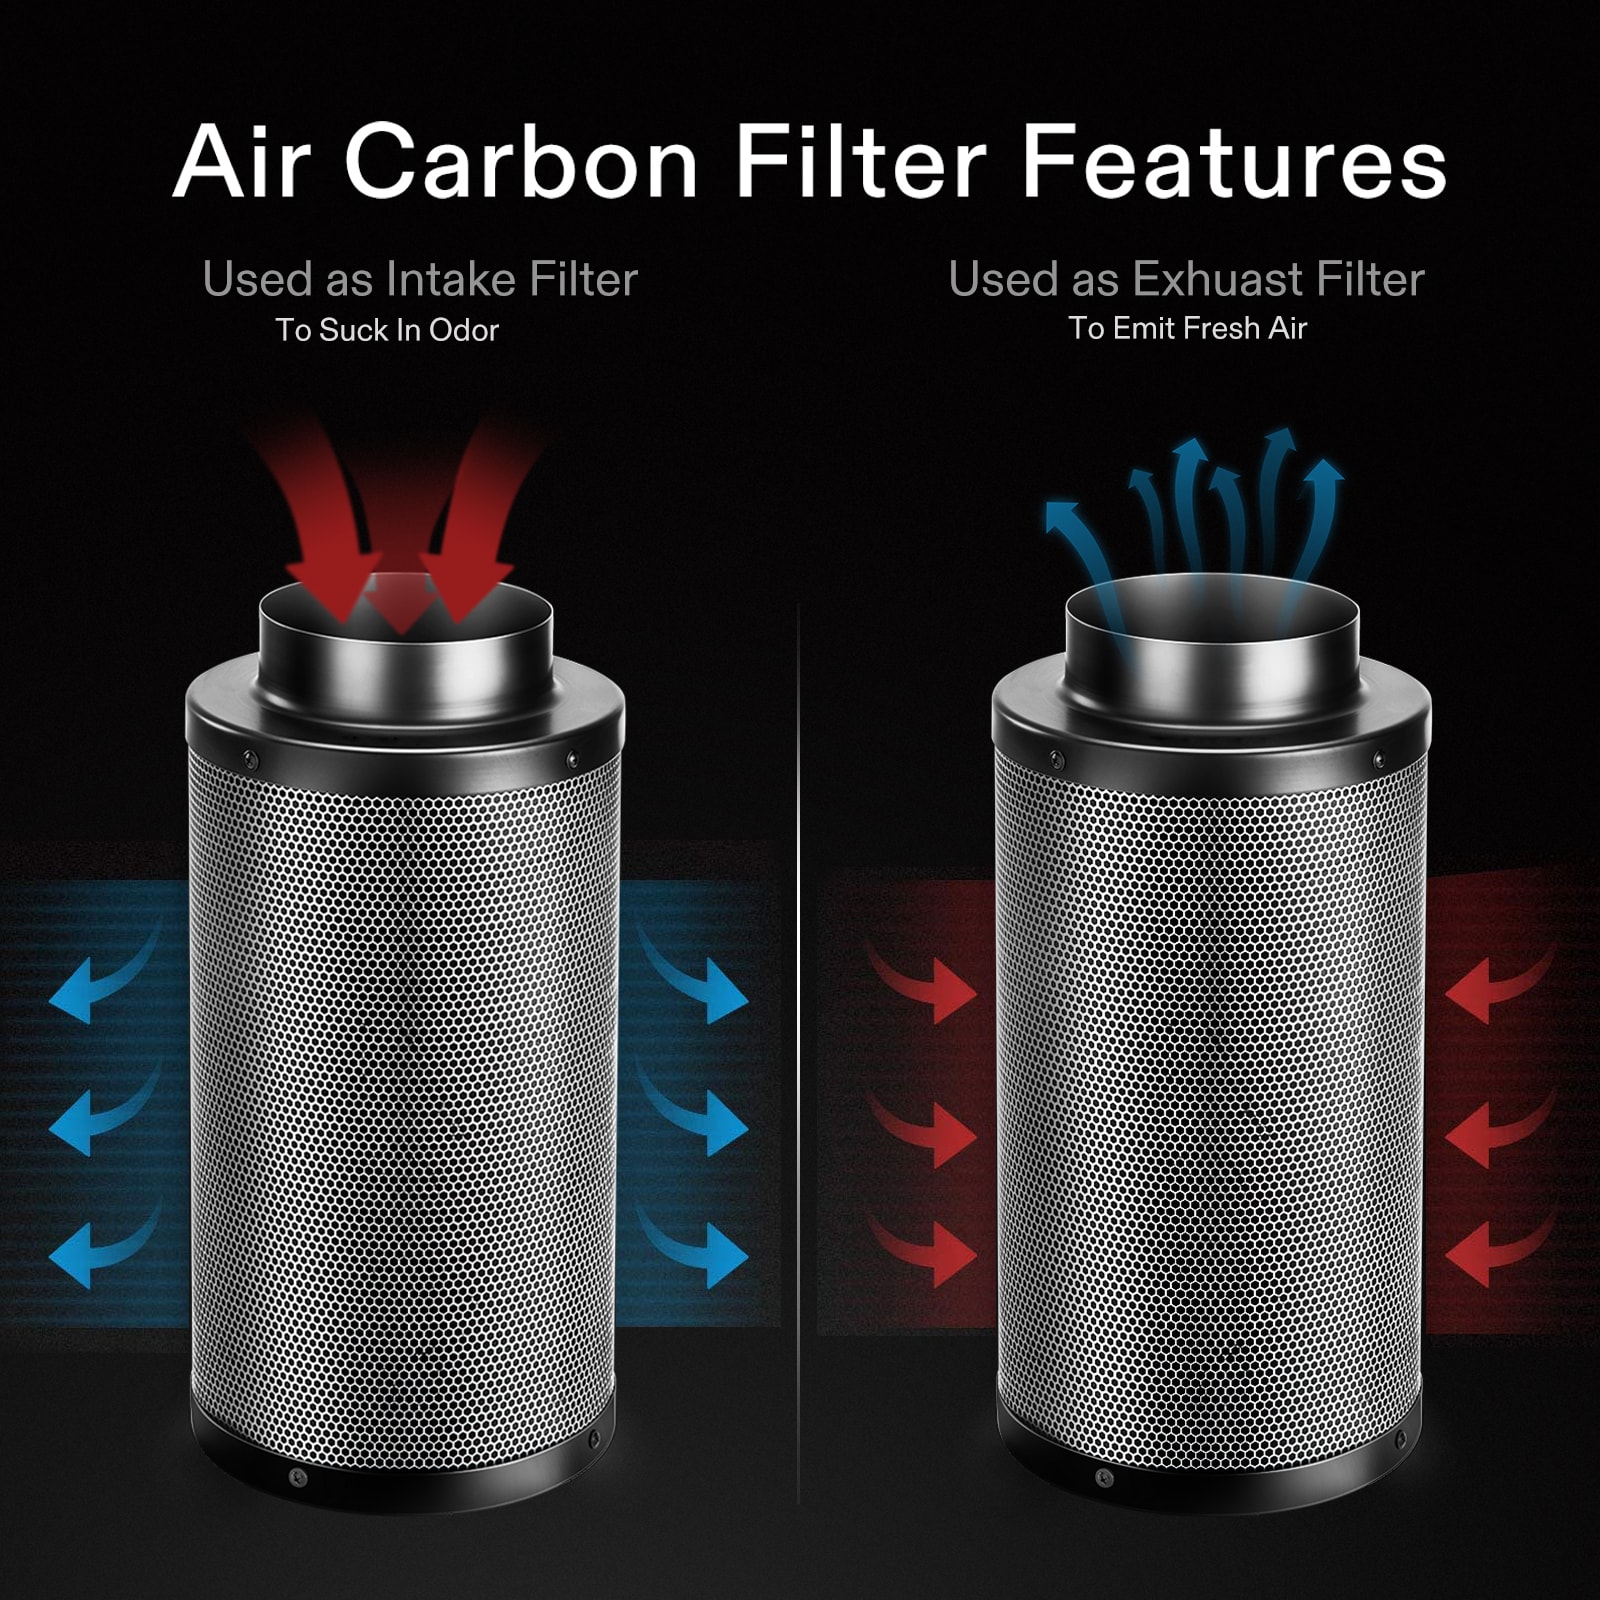 VIVOSUN 4" 6" 8" inch Air Carbon Filter Odor Control Scrubber w/ Virgin Charcoal 